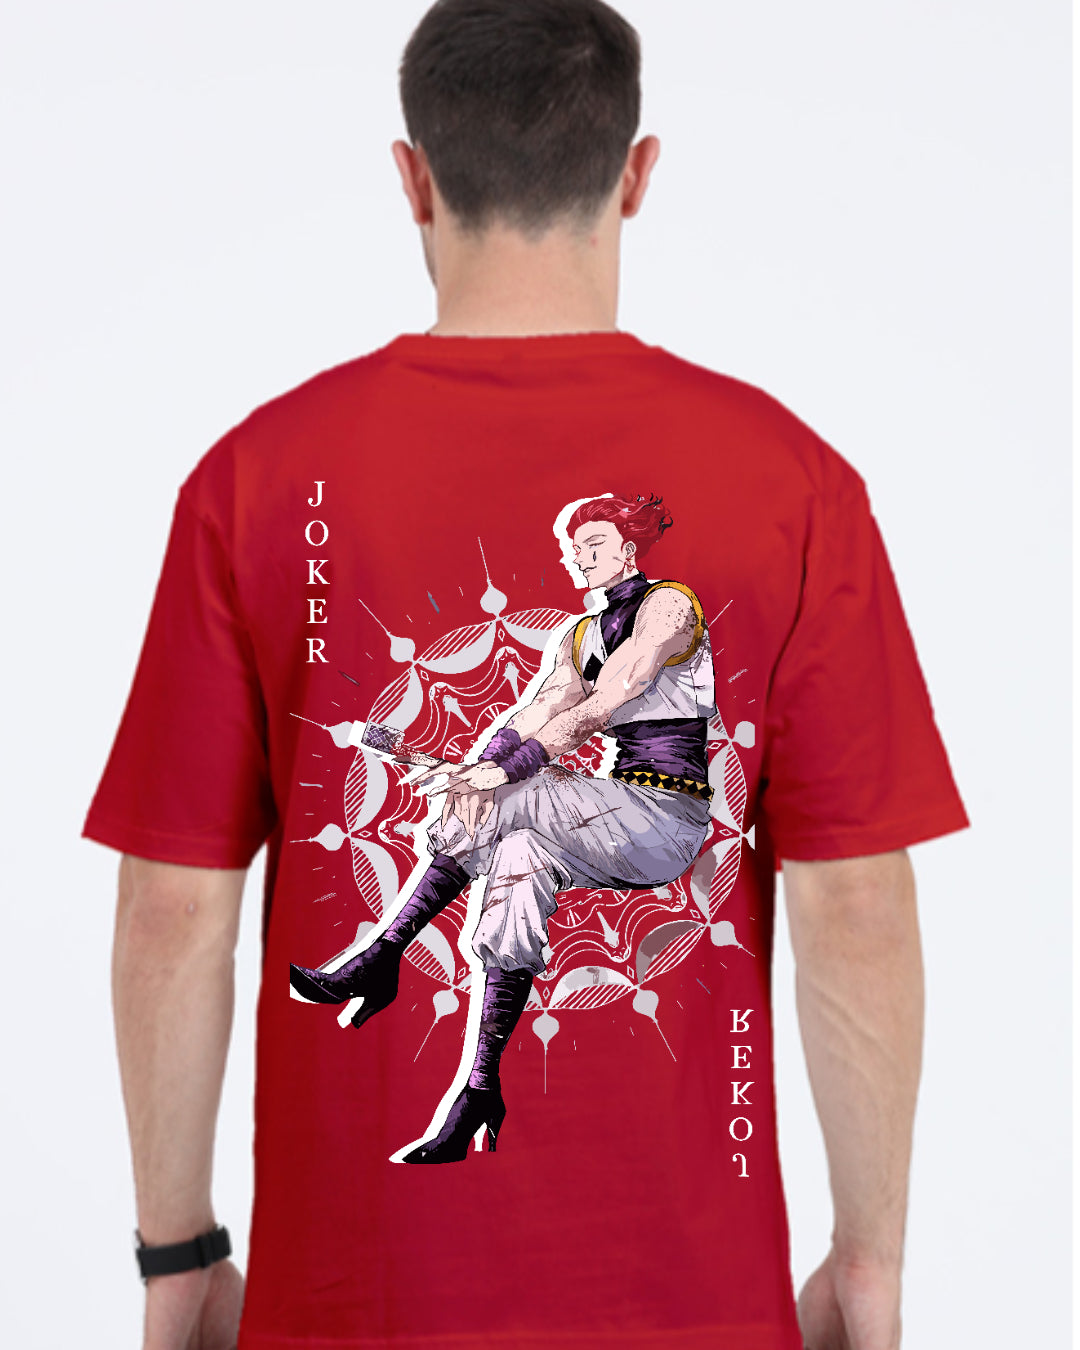 Unisex Hisoka Oversized T-shirt